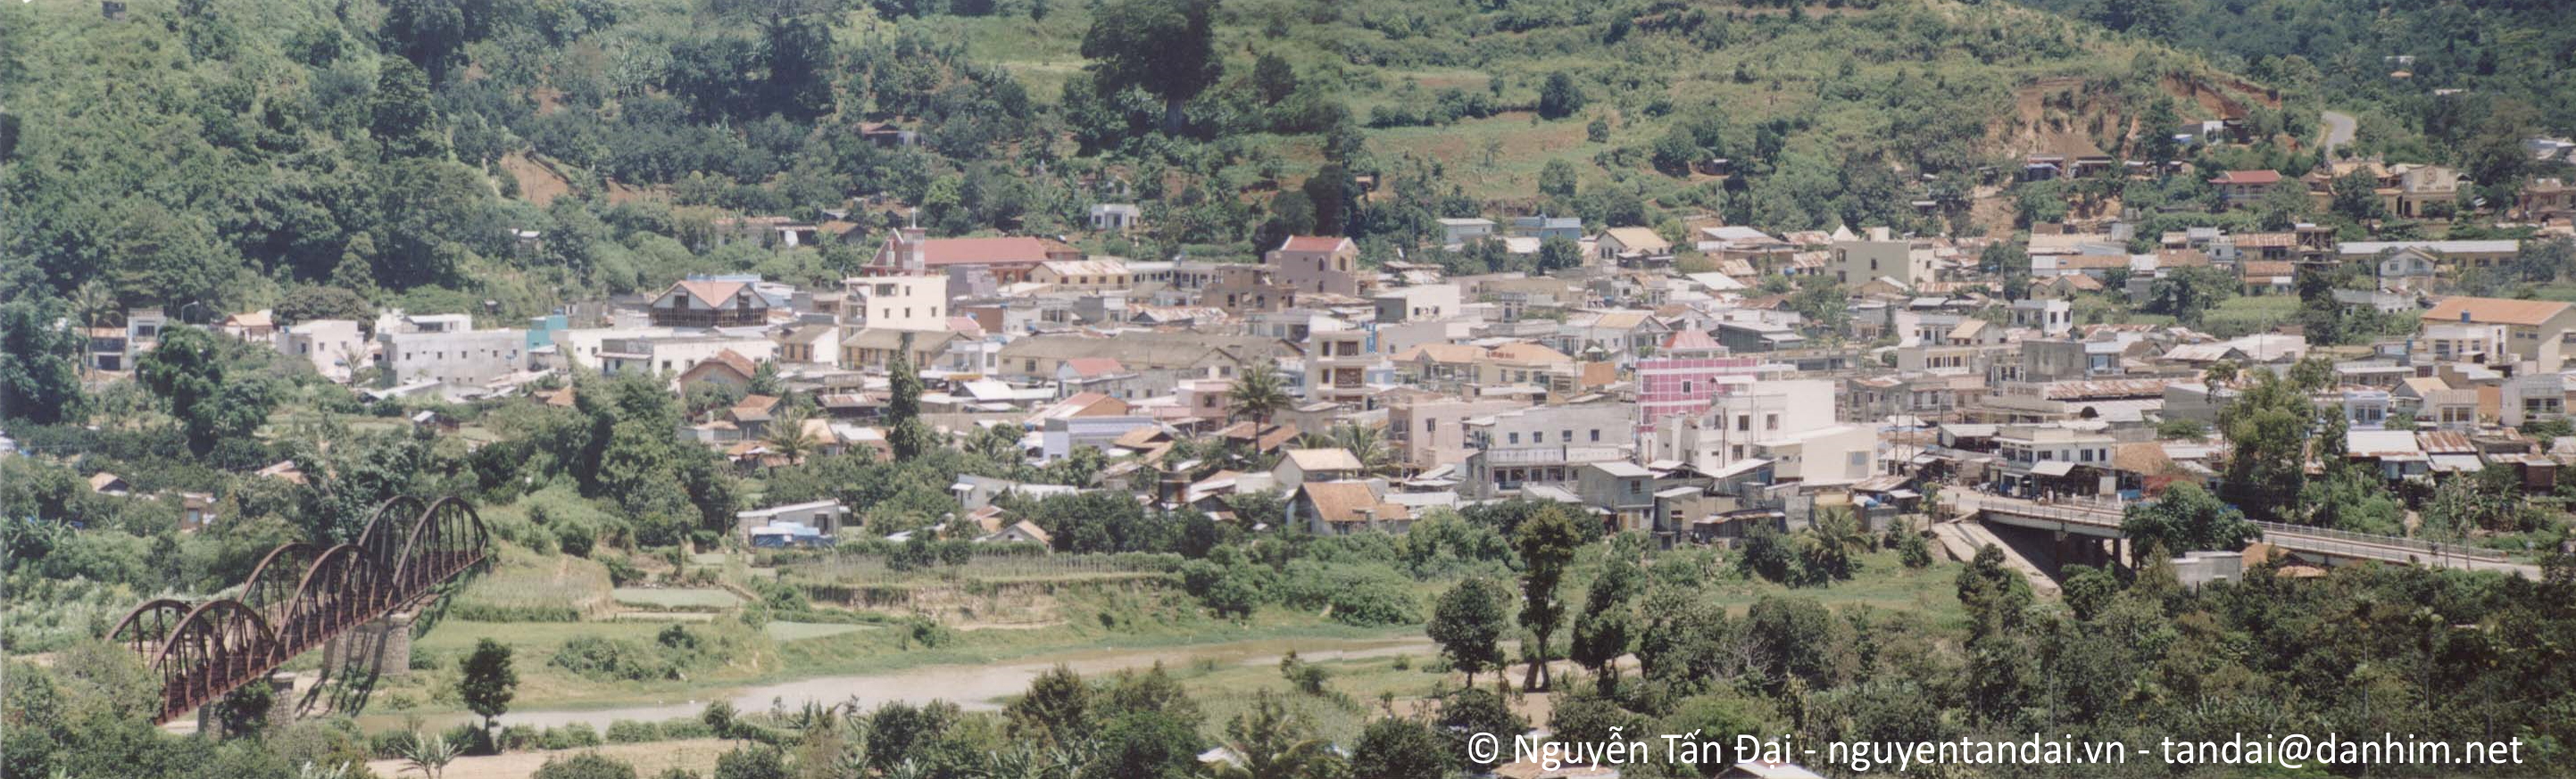 Khu trung tâm thị trấn Dran nhìn từ chùa Giác Nguyên.